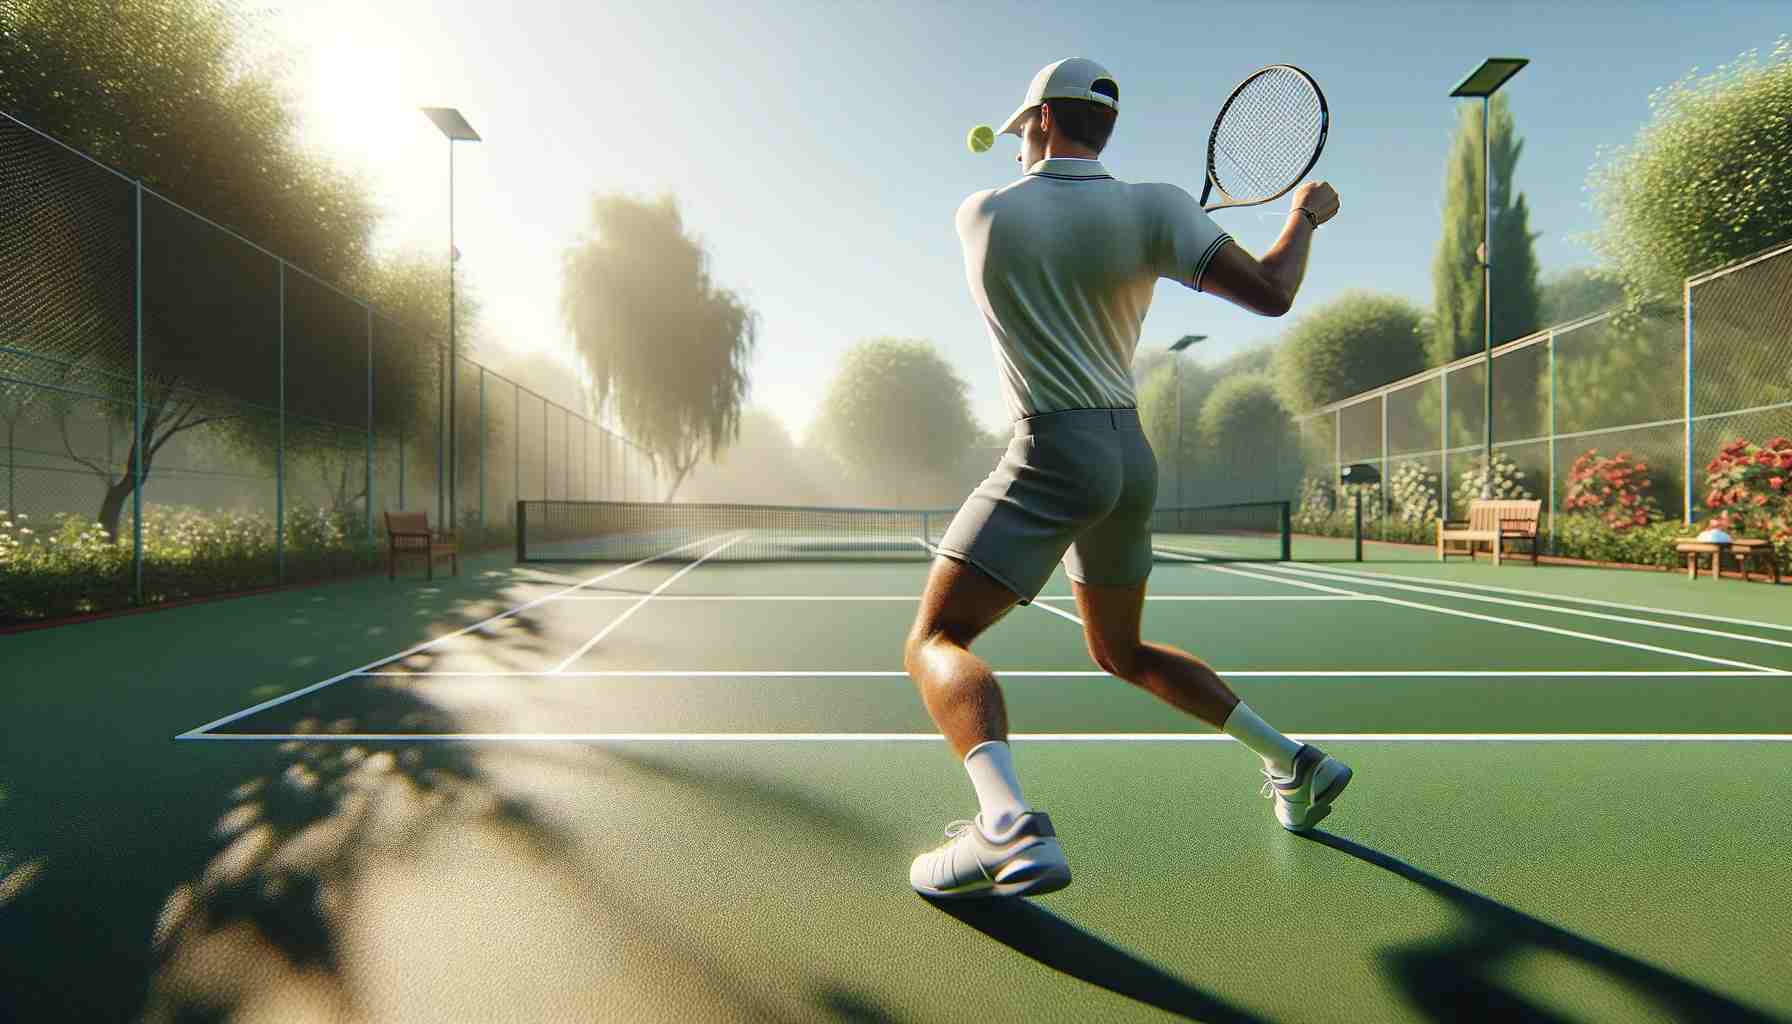 Realisztikus jelenet egy személyről, aki teniszezik egy szabadtéri pályán. A pályát buja zöld környezet veszi körül, néhány fával és bokorral. A